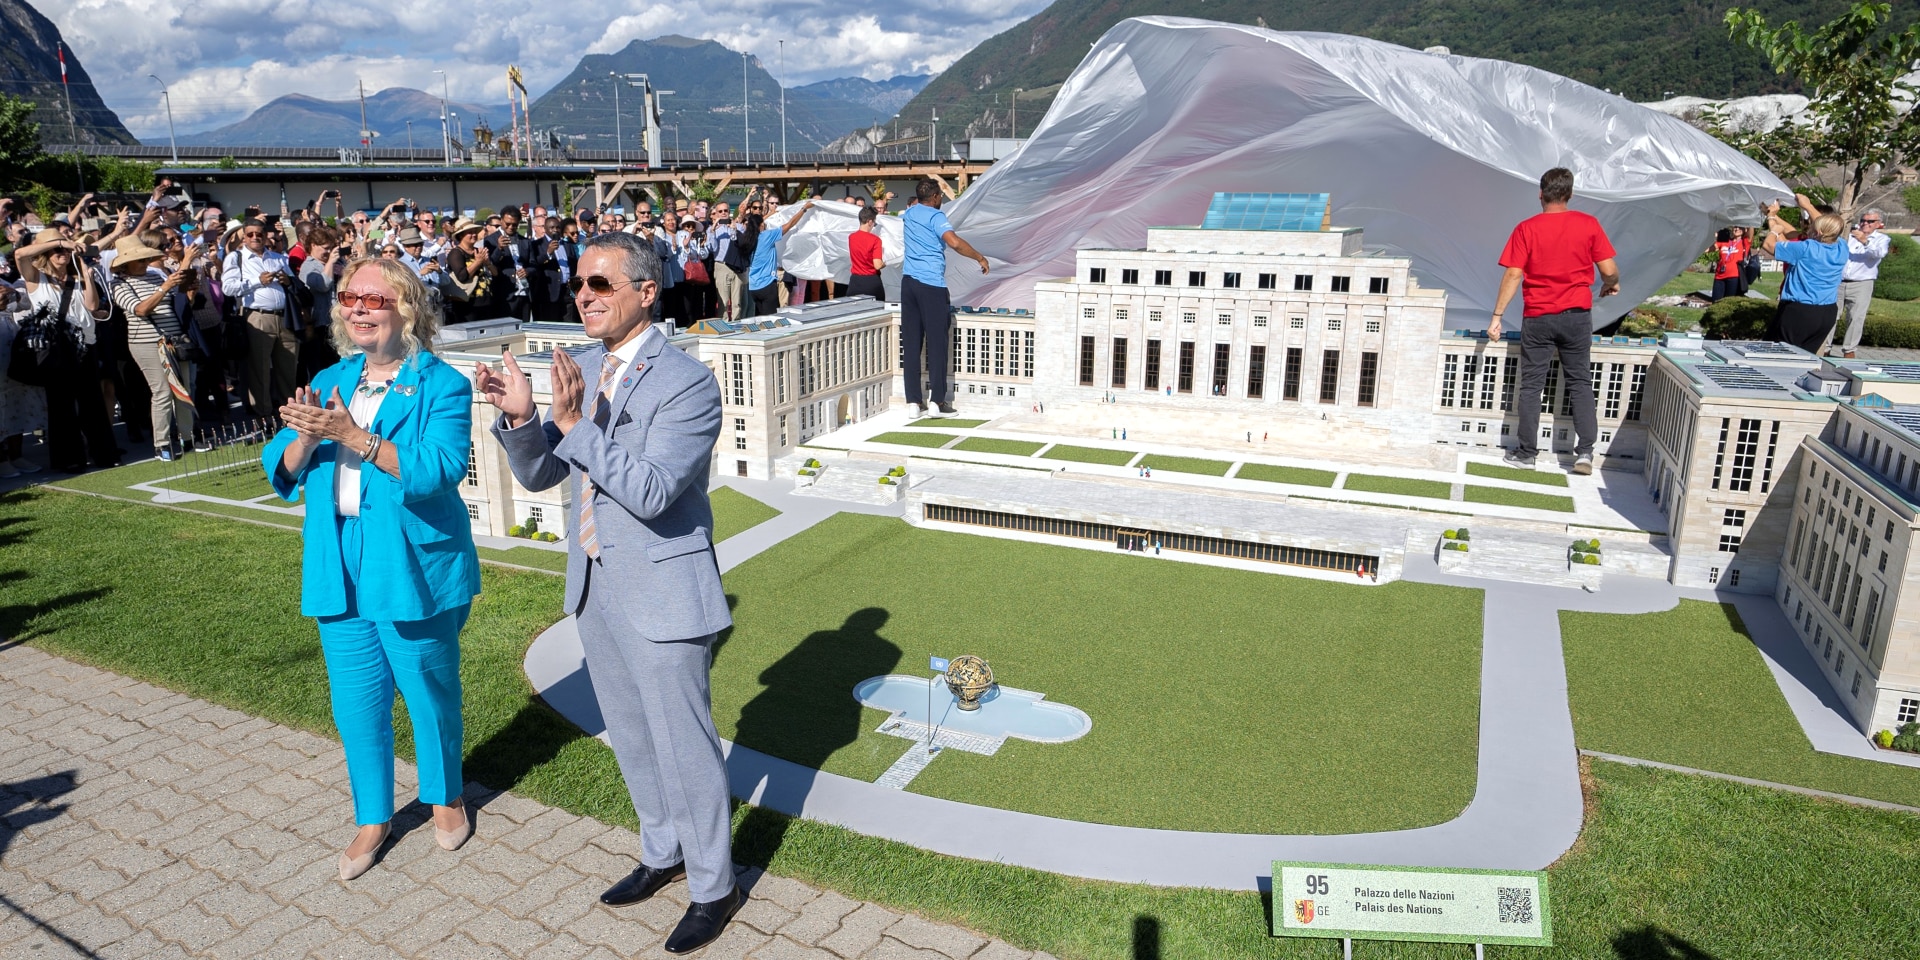 Le président de la Confédération Ignazio Cassis inaugure une maquette du Palais des Nations sur le site de Swissminiatur à Melide.